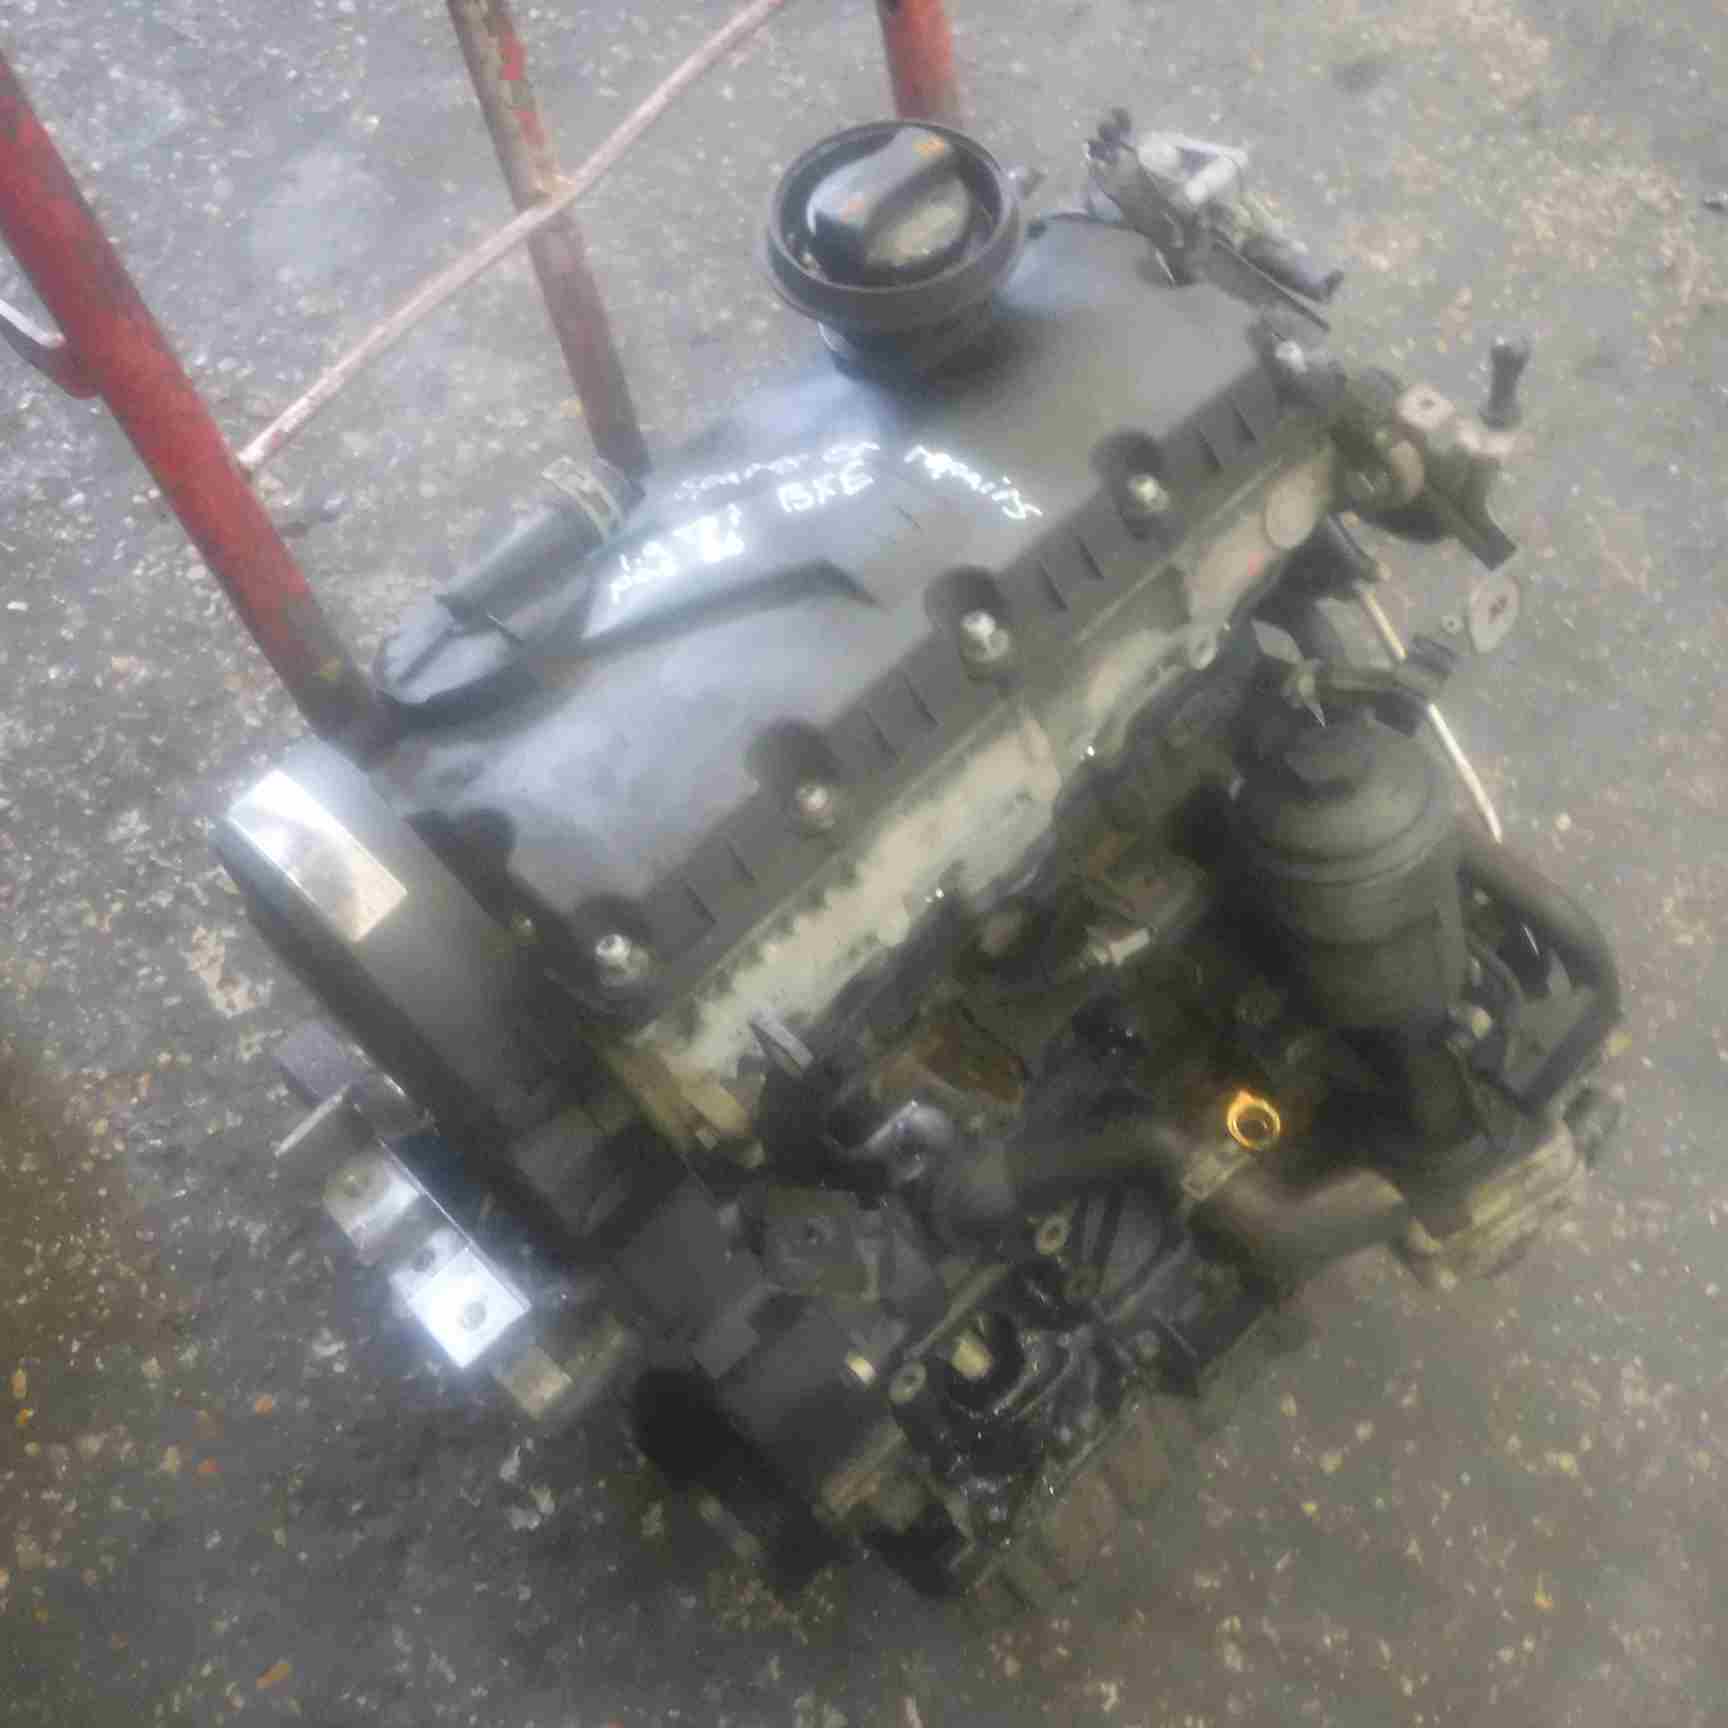 Passat-b6-broken-bxe-engine